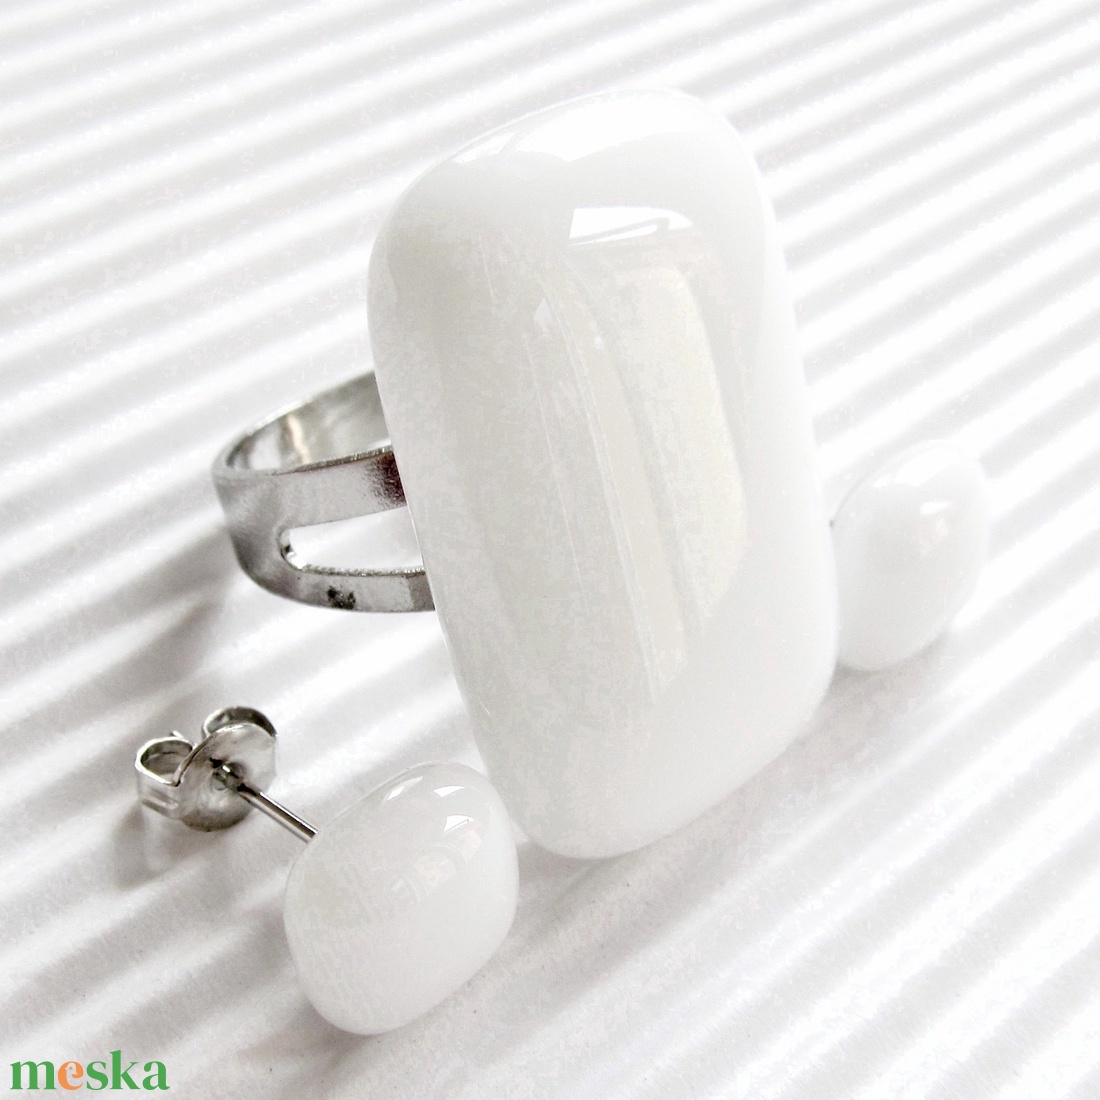 Hófehér elegáns üveg gyűrű, üvegékszer - ékszer - gyűrű - statement gyűrű - Meska.hu